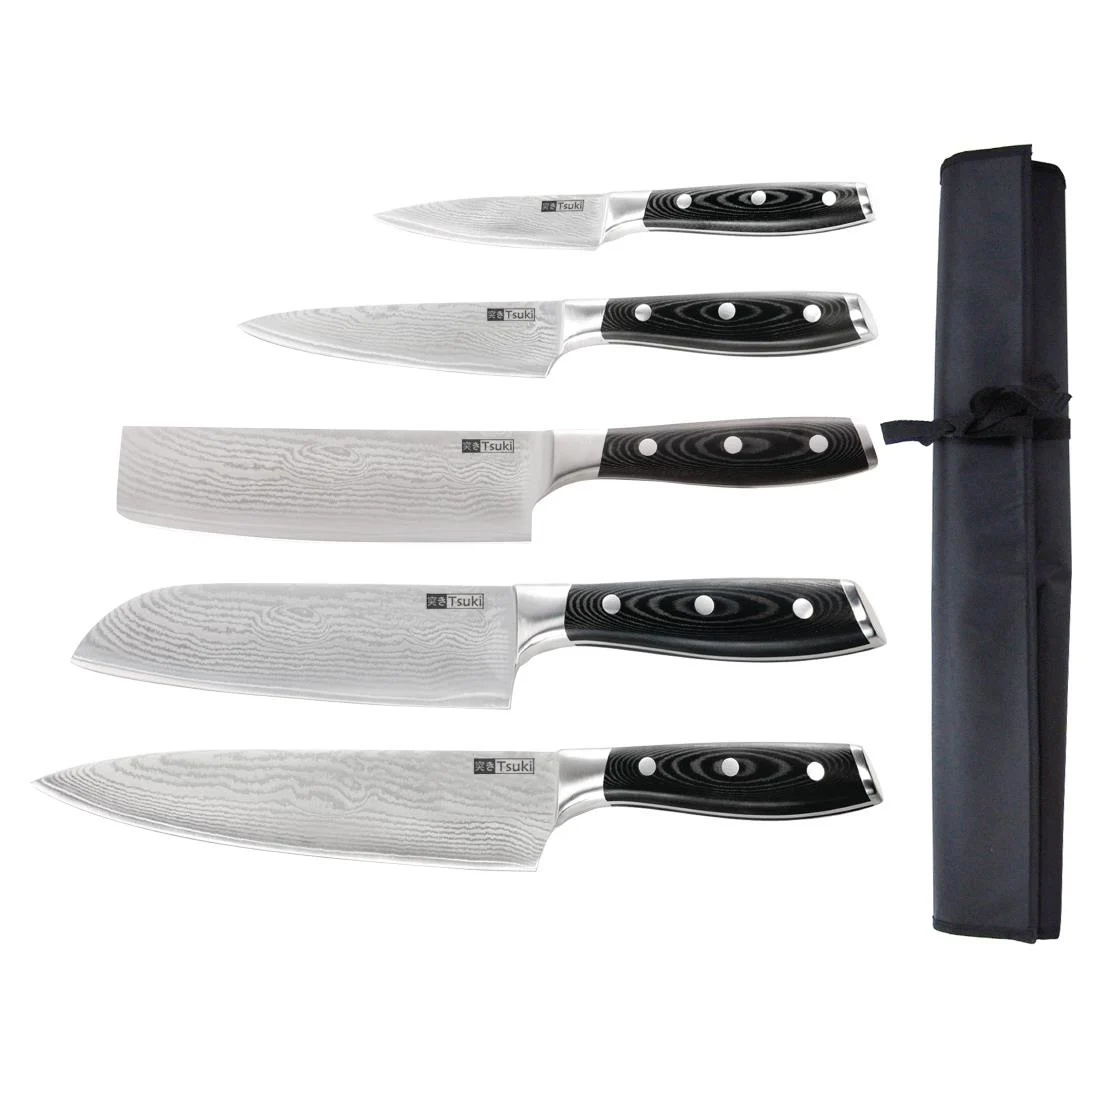 Ensemble de couteaux japonais Tsuki | 5 couteaux avec étui